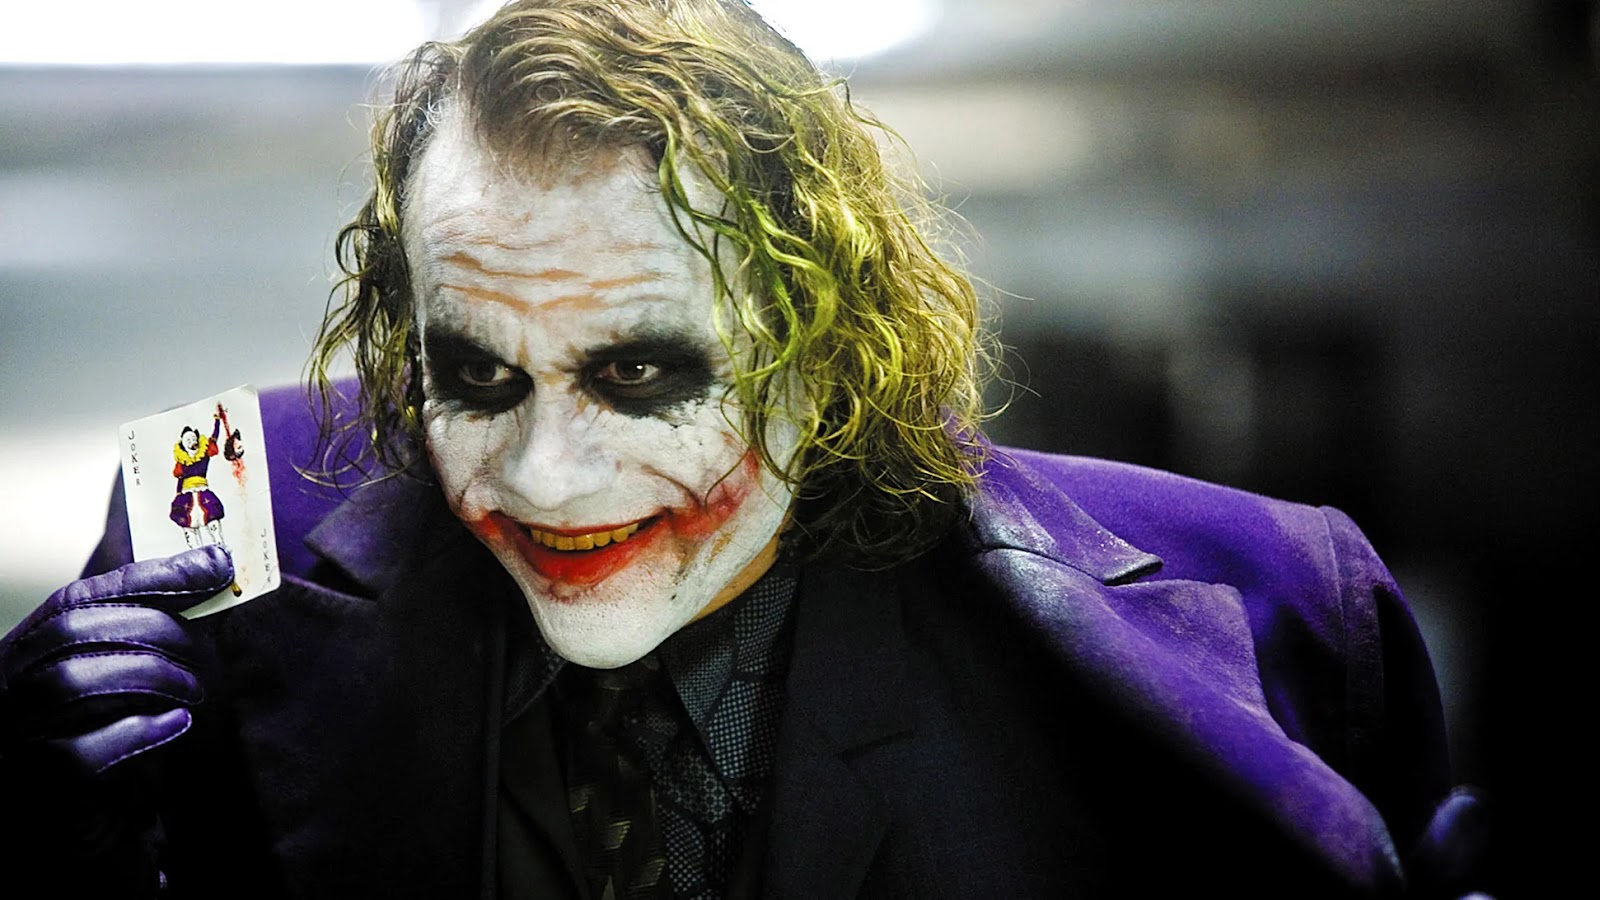 El Joker de Heath Ledger en The dark night, sonriendo con su traje morado y una carta del joker en la mano